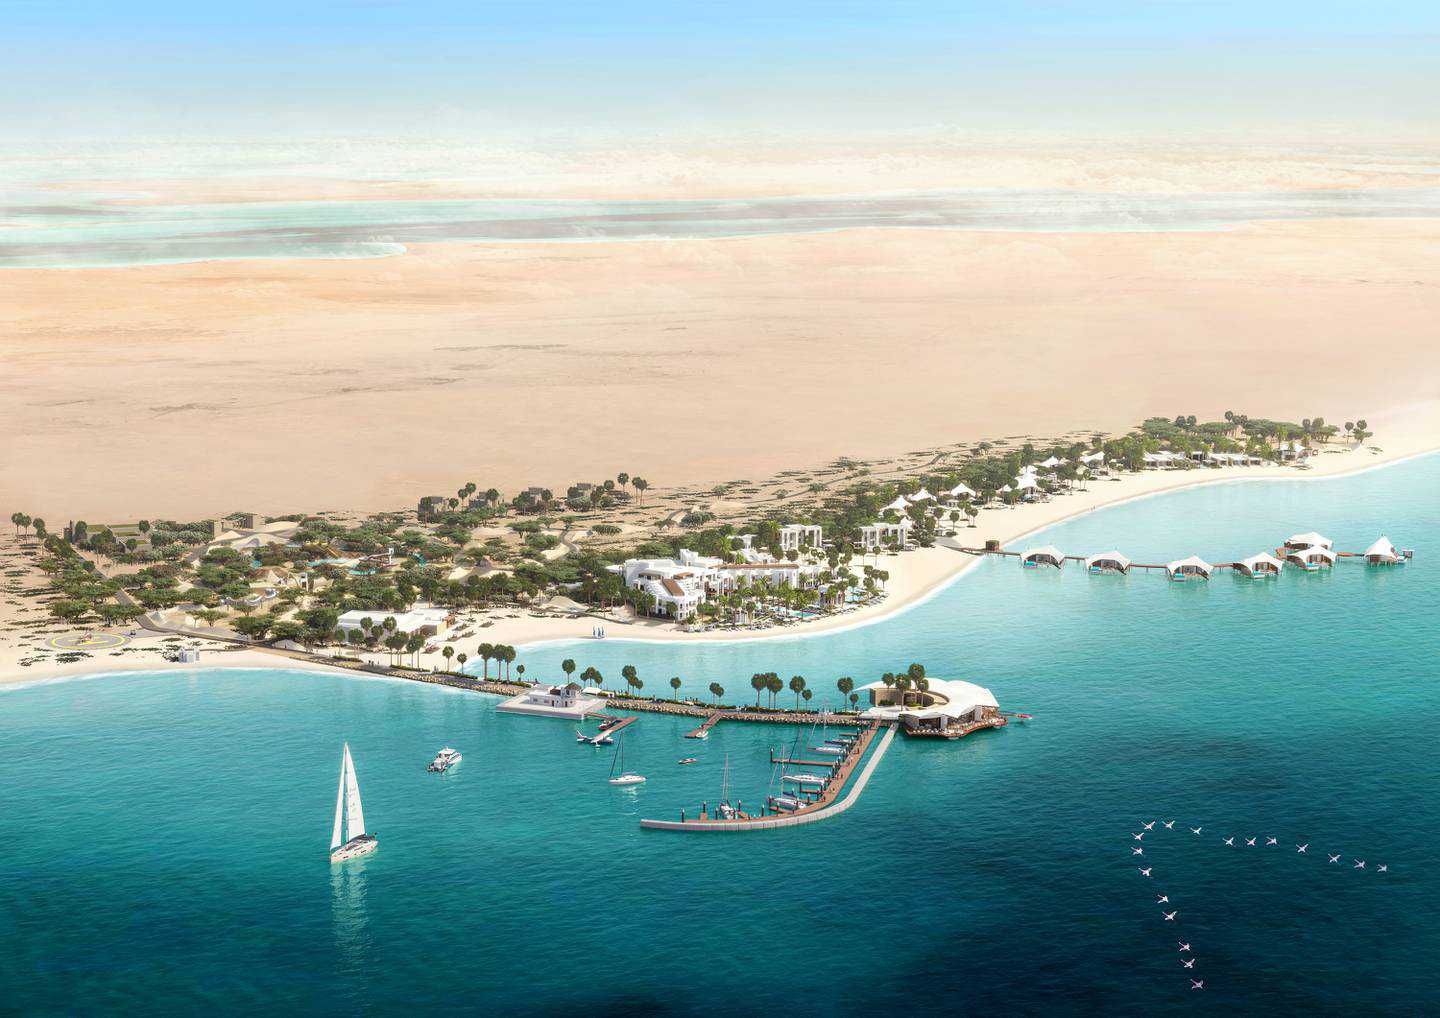 Dubai's Emaar to open first Vida hotel outside the UAE in Bahrain in December